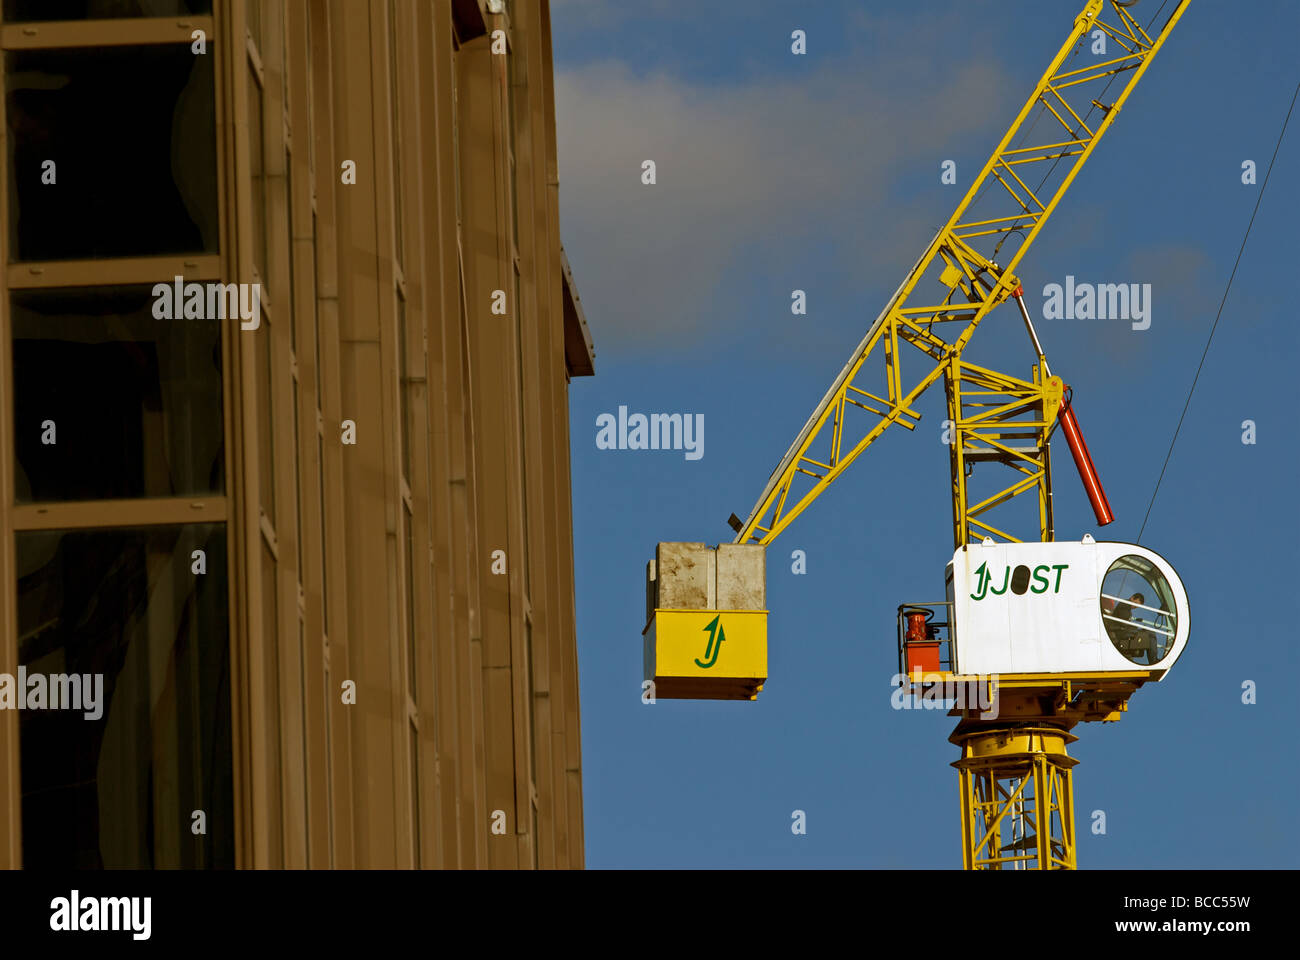 Jost tower crane, Ipswich, UK. Stock Photo